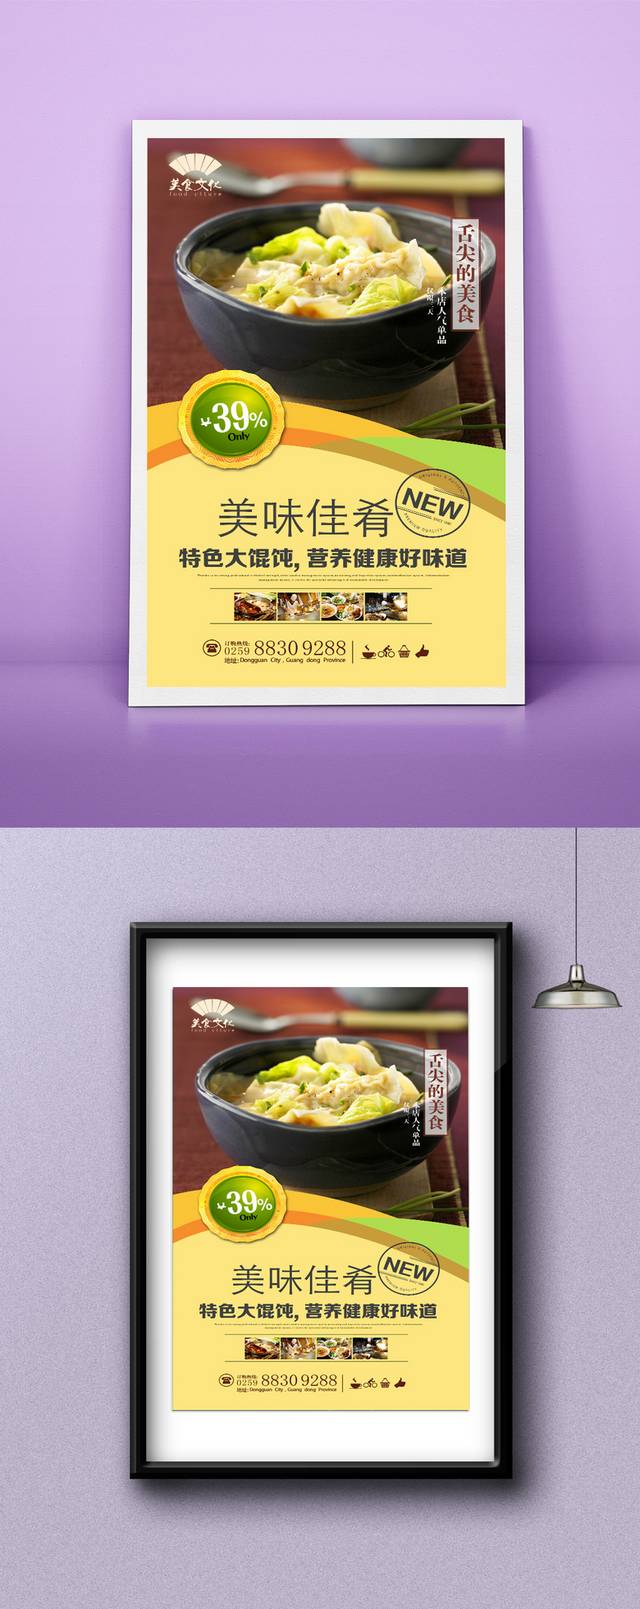 大馄饨美食宣传海报设计